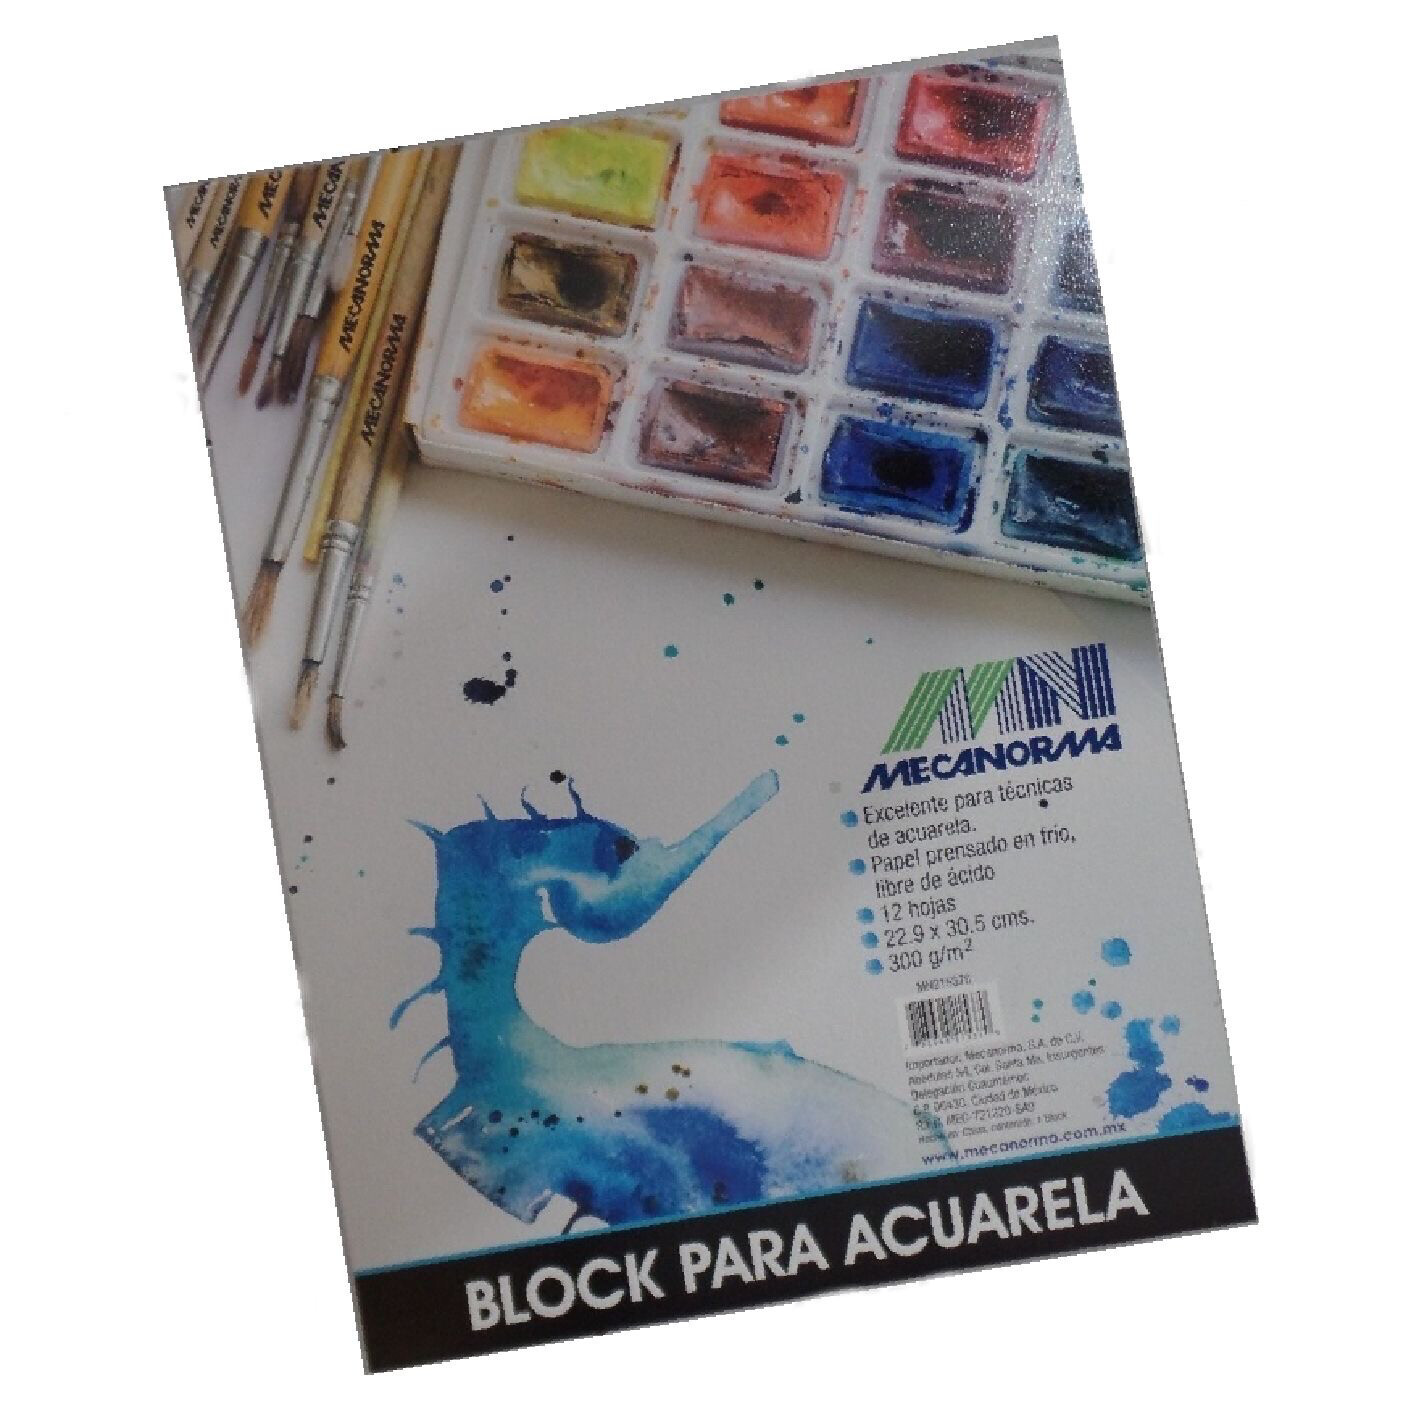 ​Block Para Acuarela Mecanorma 22.9X30.5 DE 300 gm.